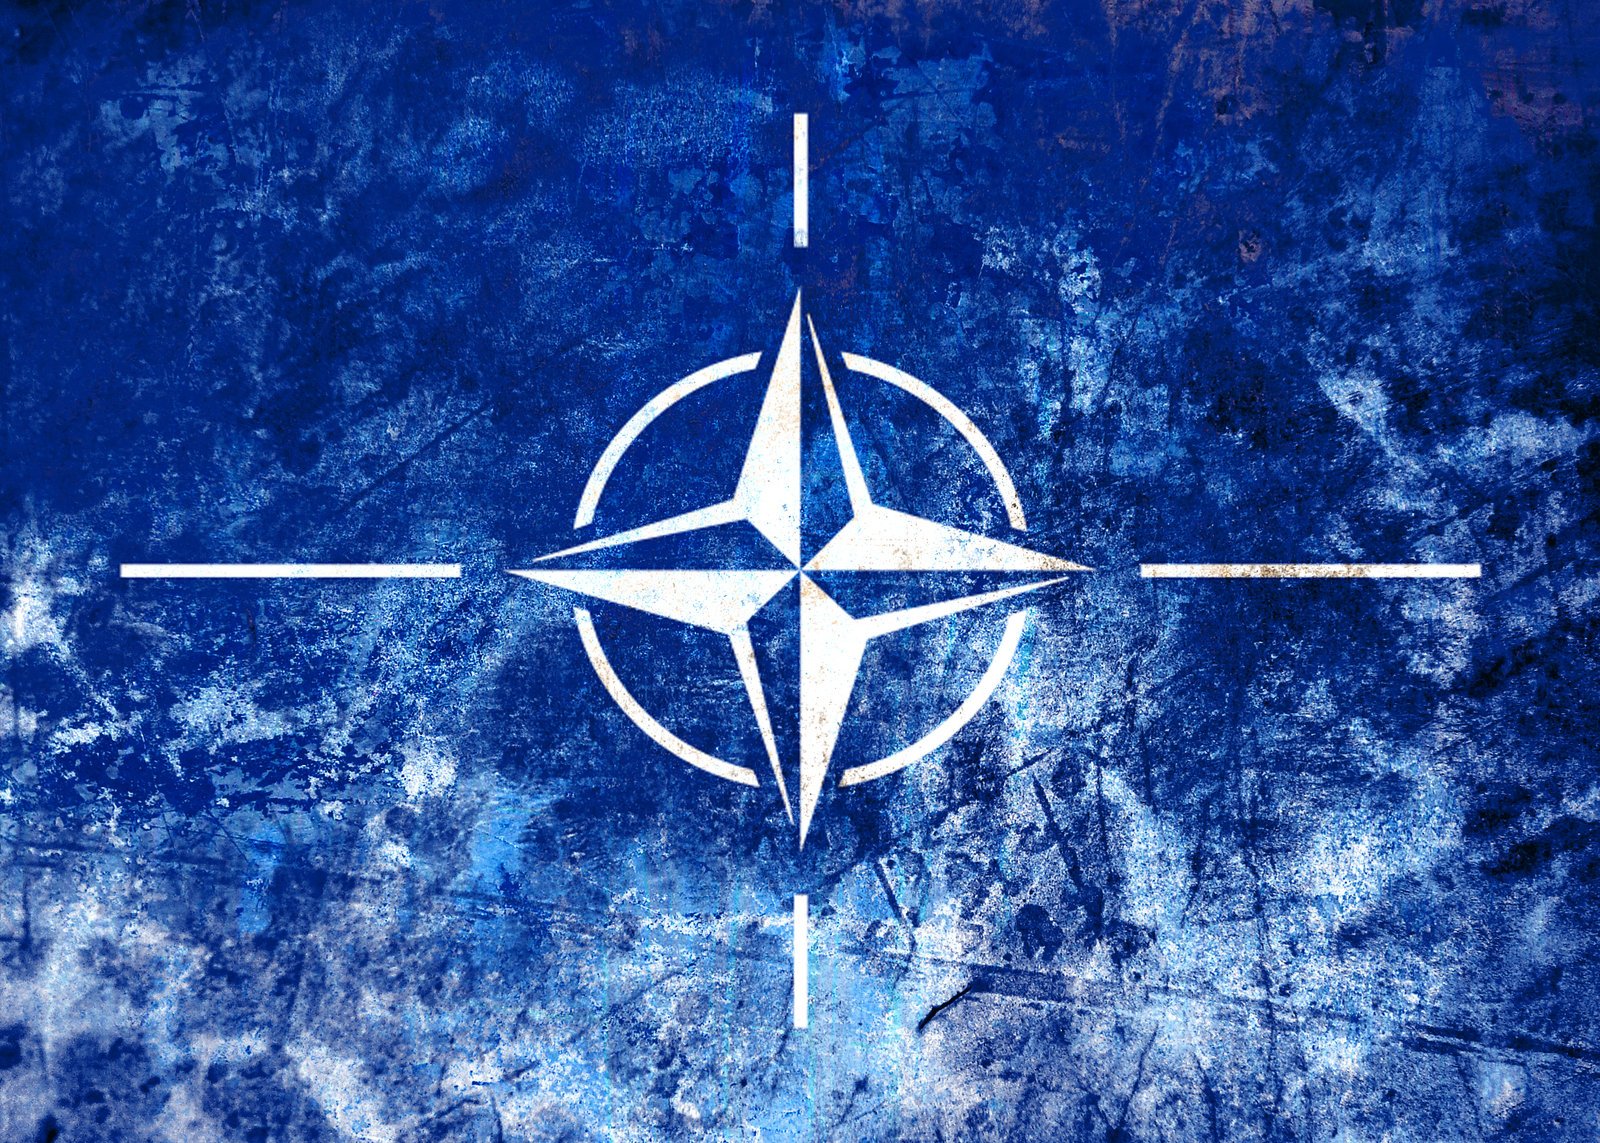 300000 нато. Флаг НАТО 1949. Североатлантический Альянс НАТО. Флаг Североатлантического Альянса. NATO (North Atlantic Treaty Organization) - Североатлантический военный Альянс (НАТО)..